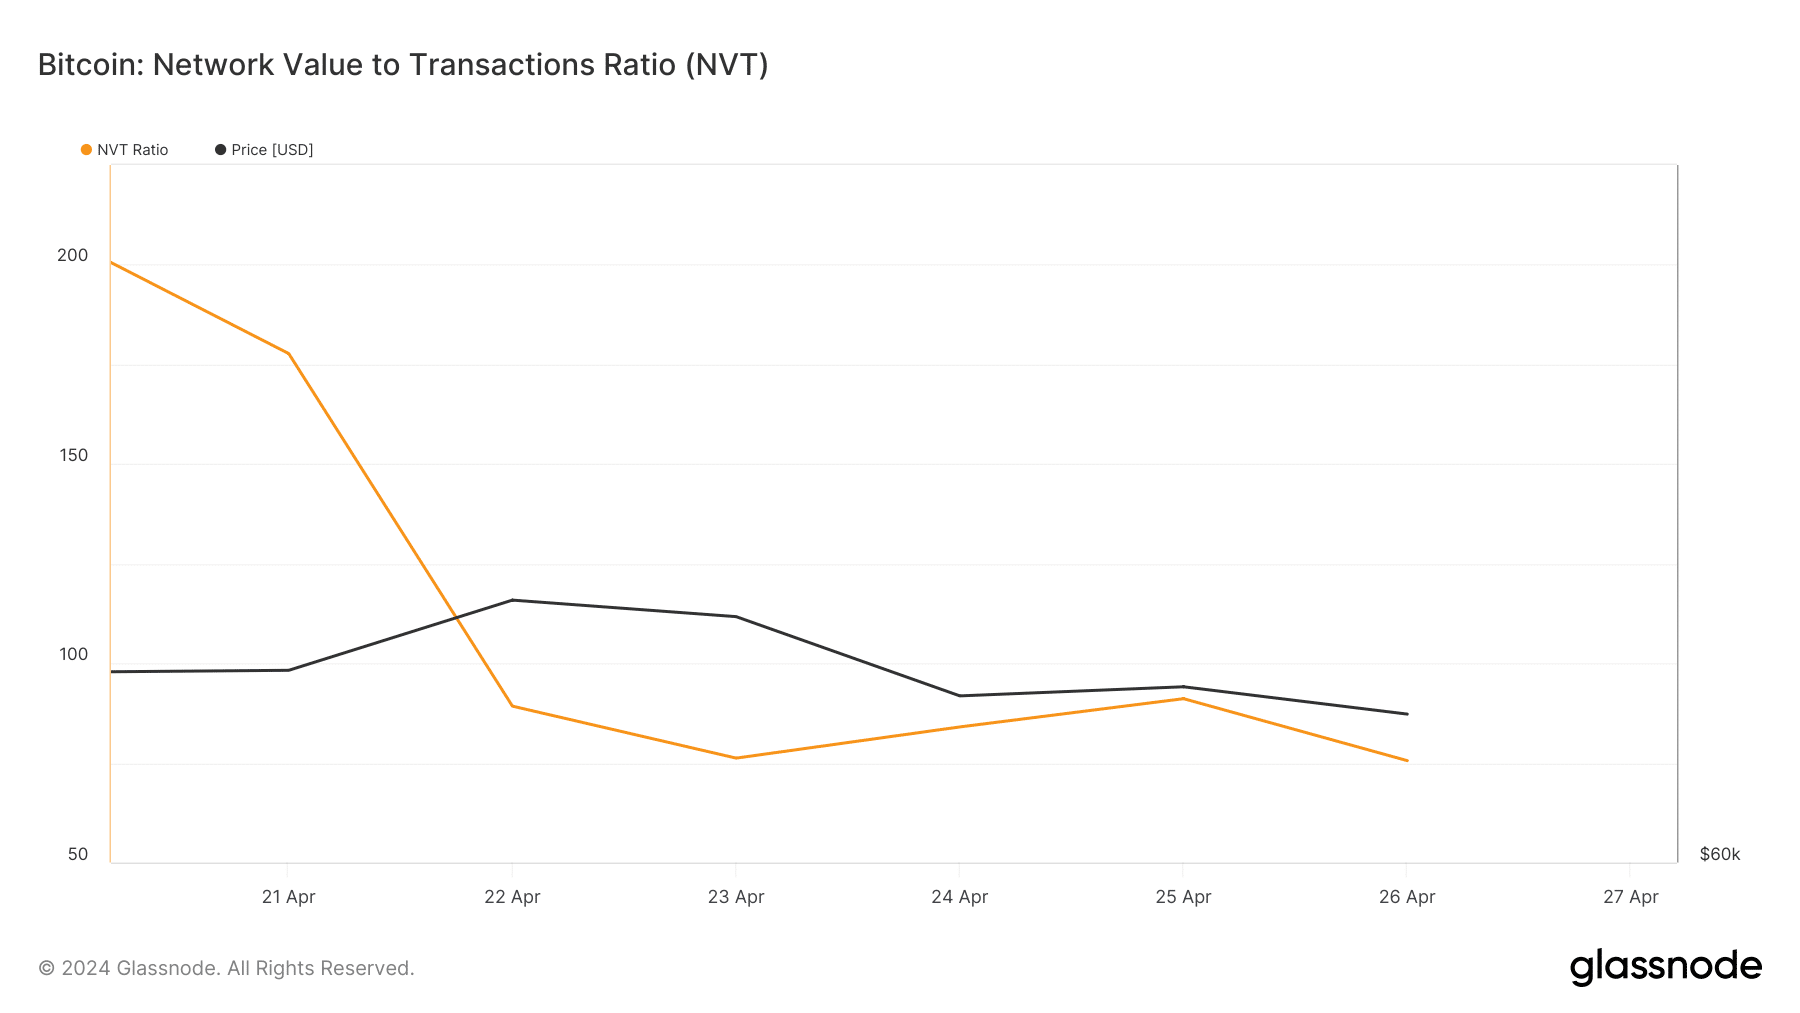 El ratio NVT de BTC ha disminuido